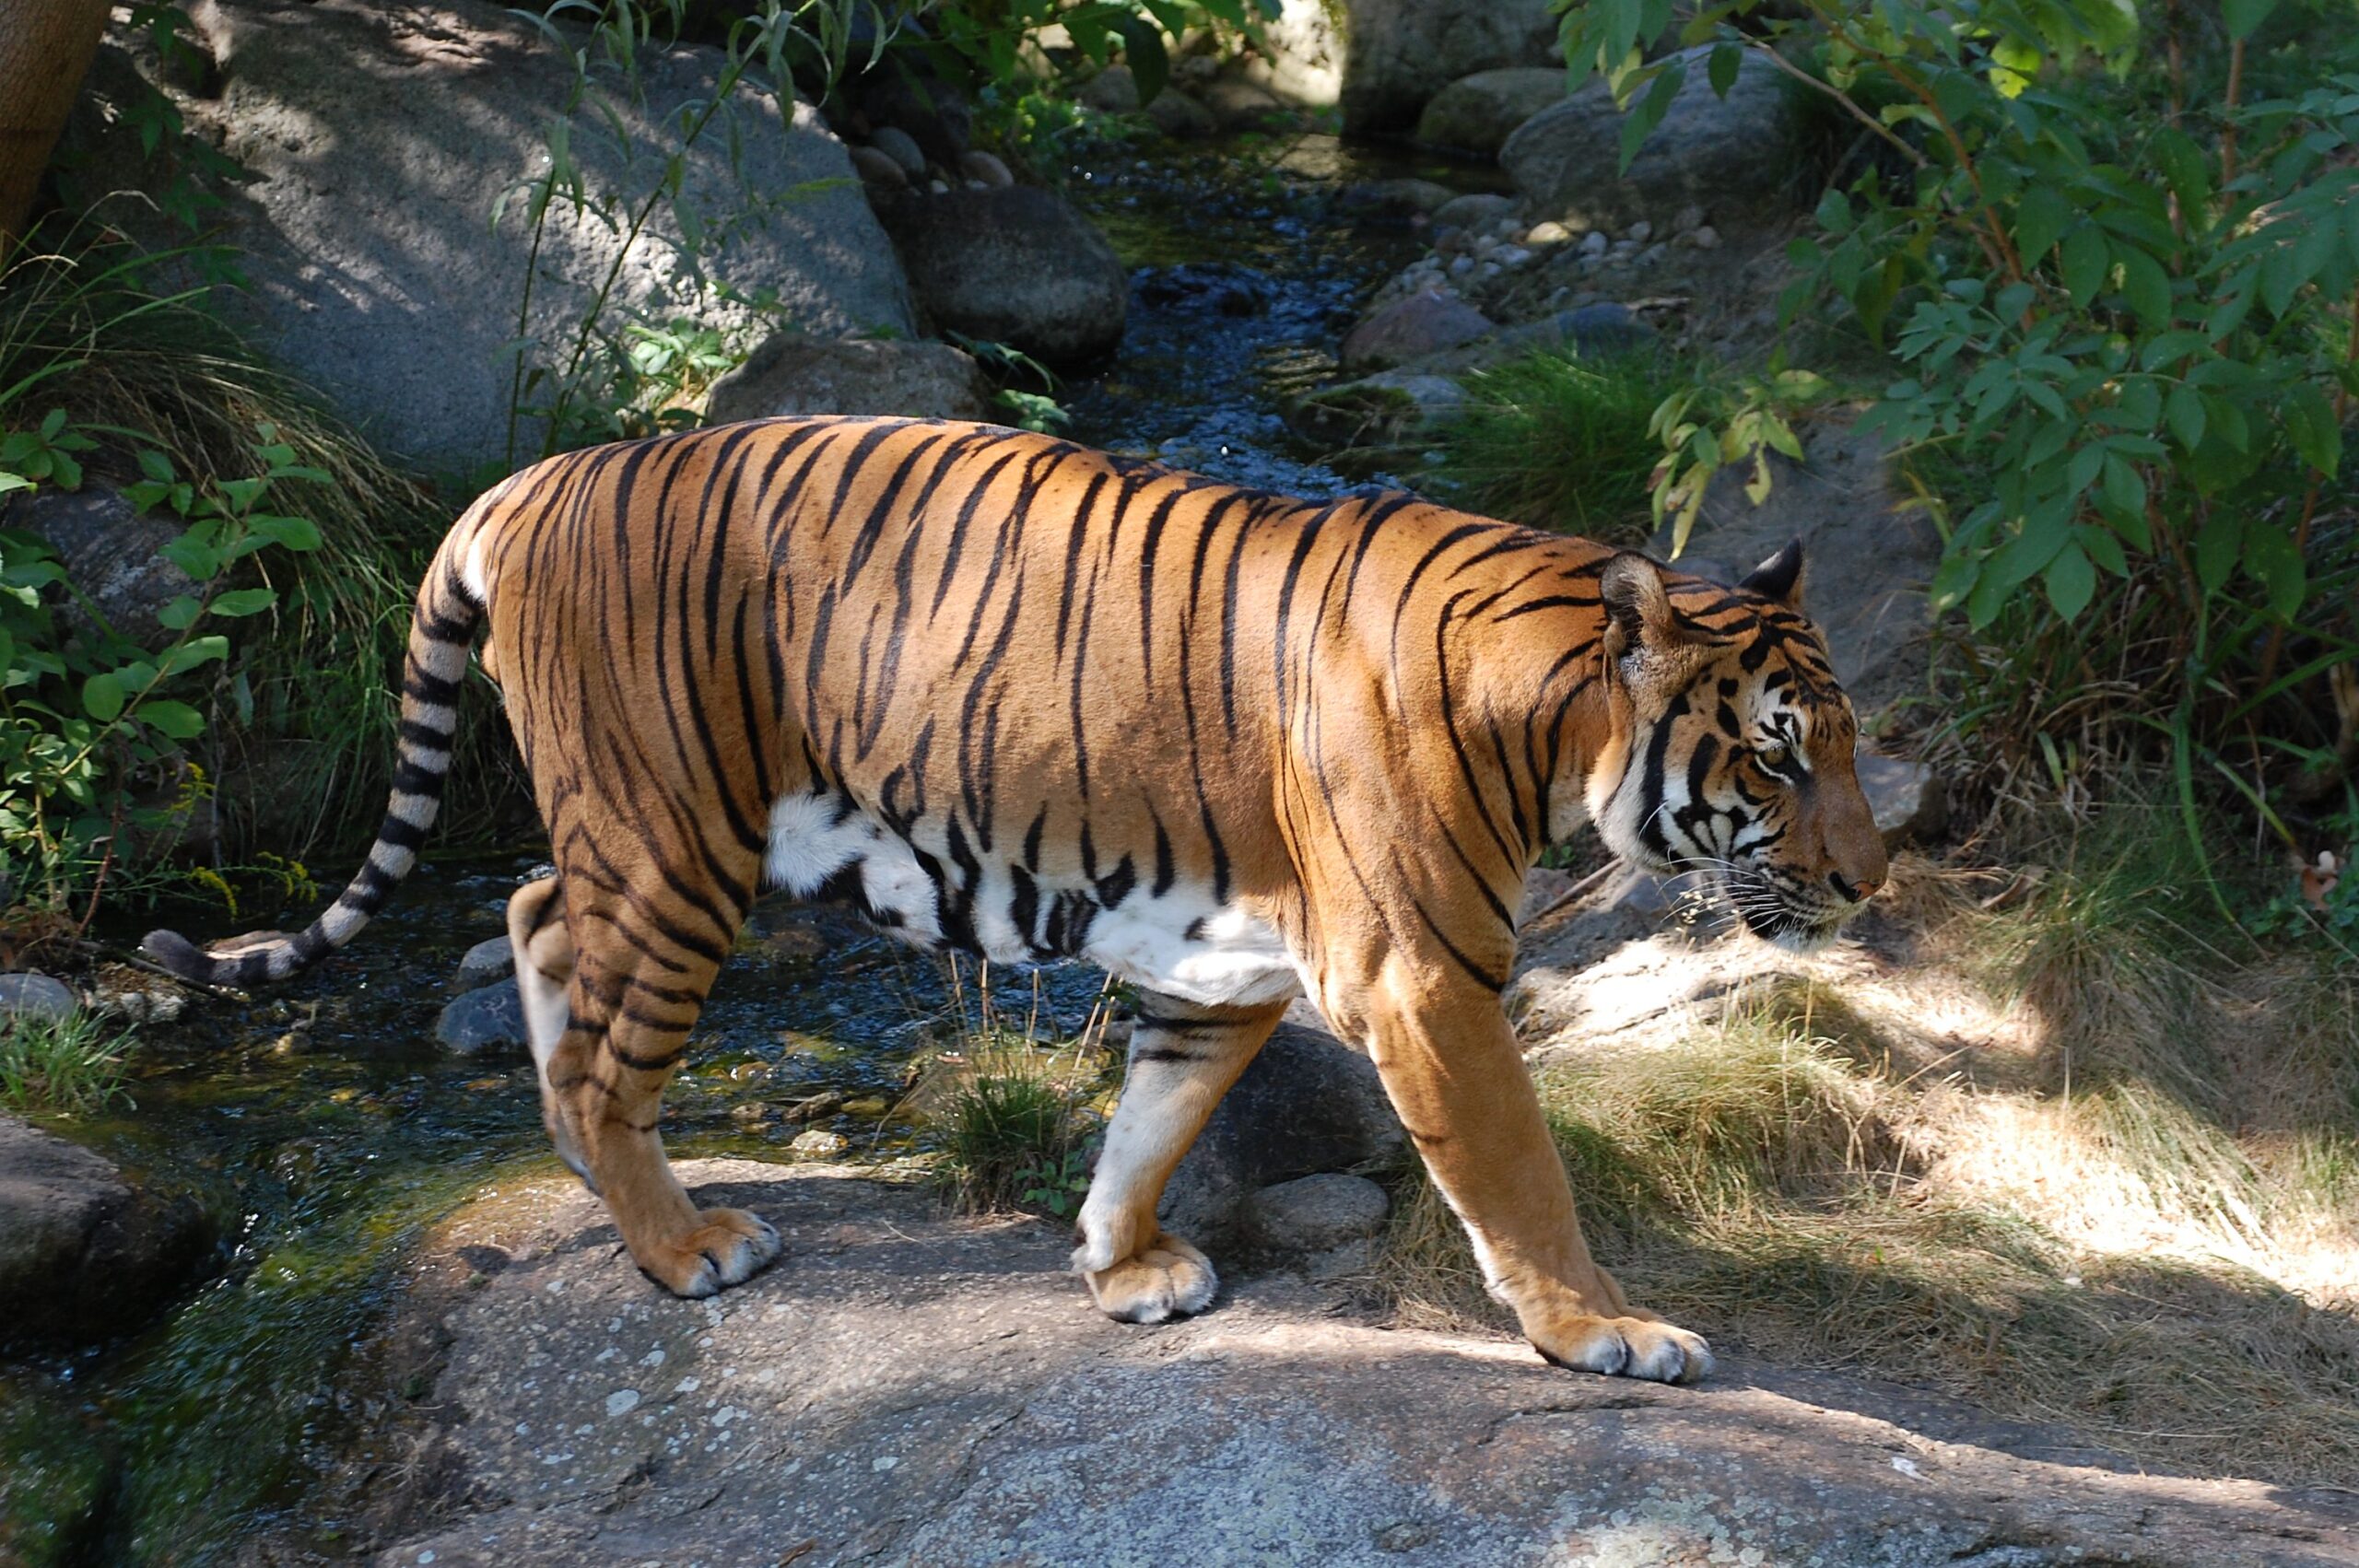 panther tiger